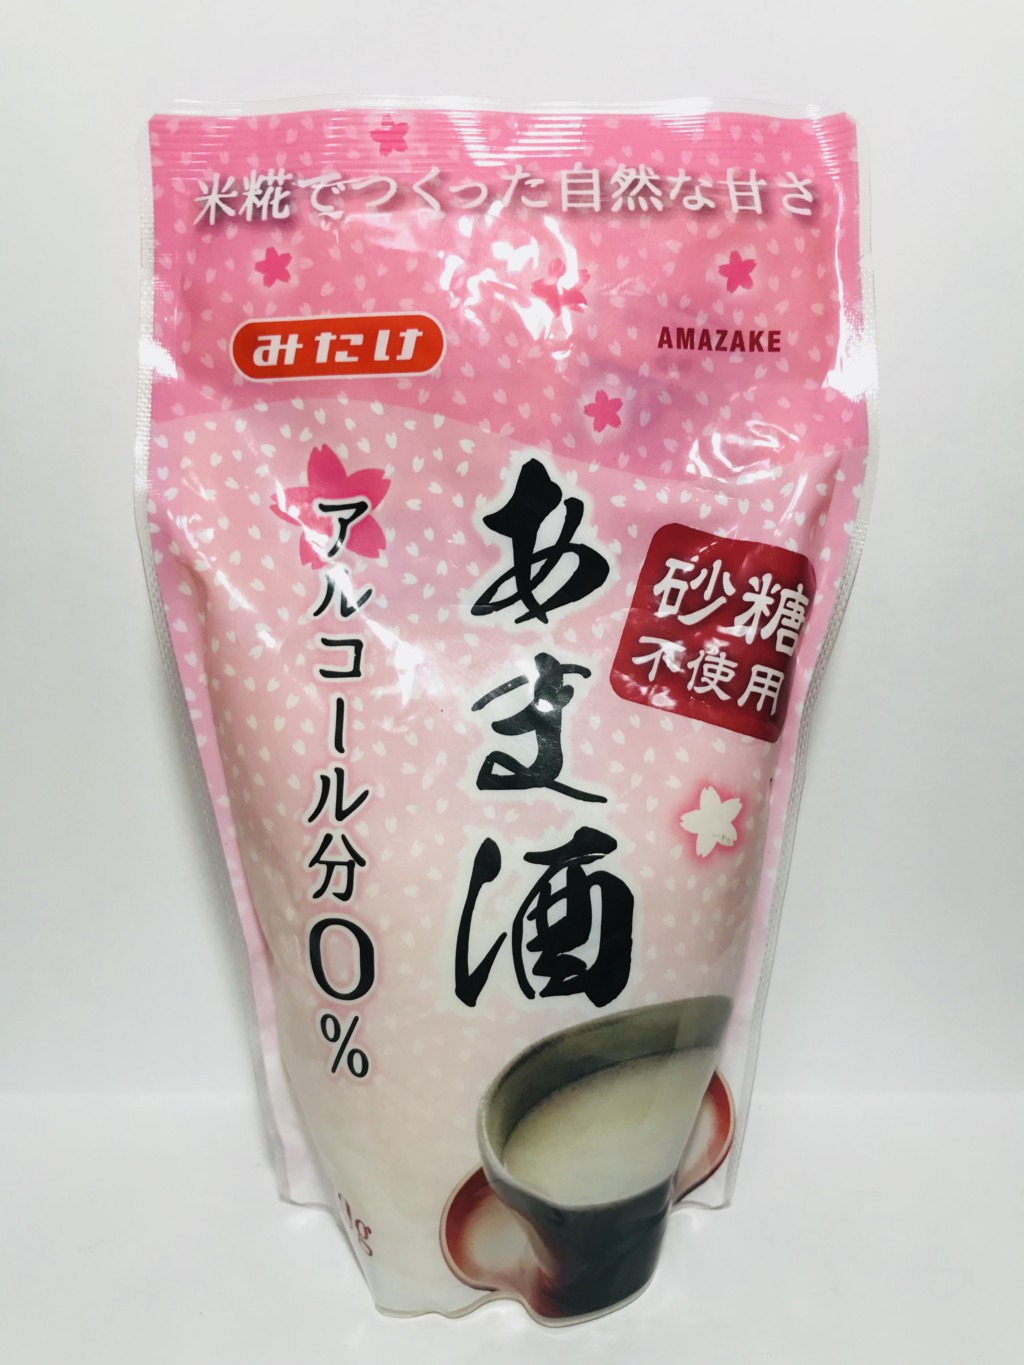 みたけ食品工業の濃縮タイプの米麹甘酒『あま酒』